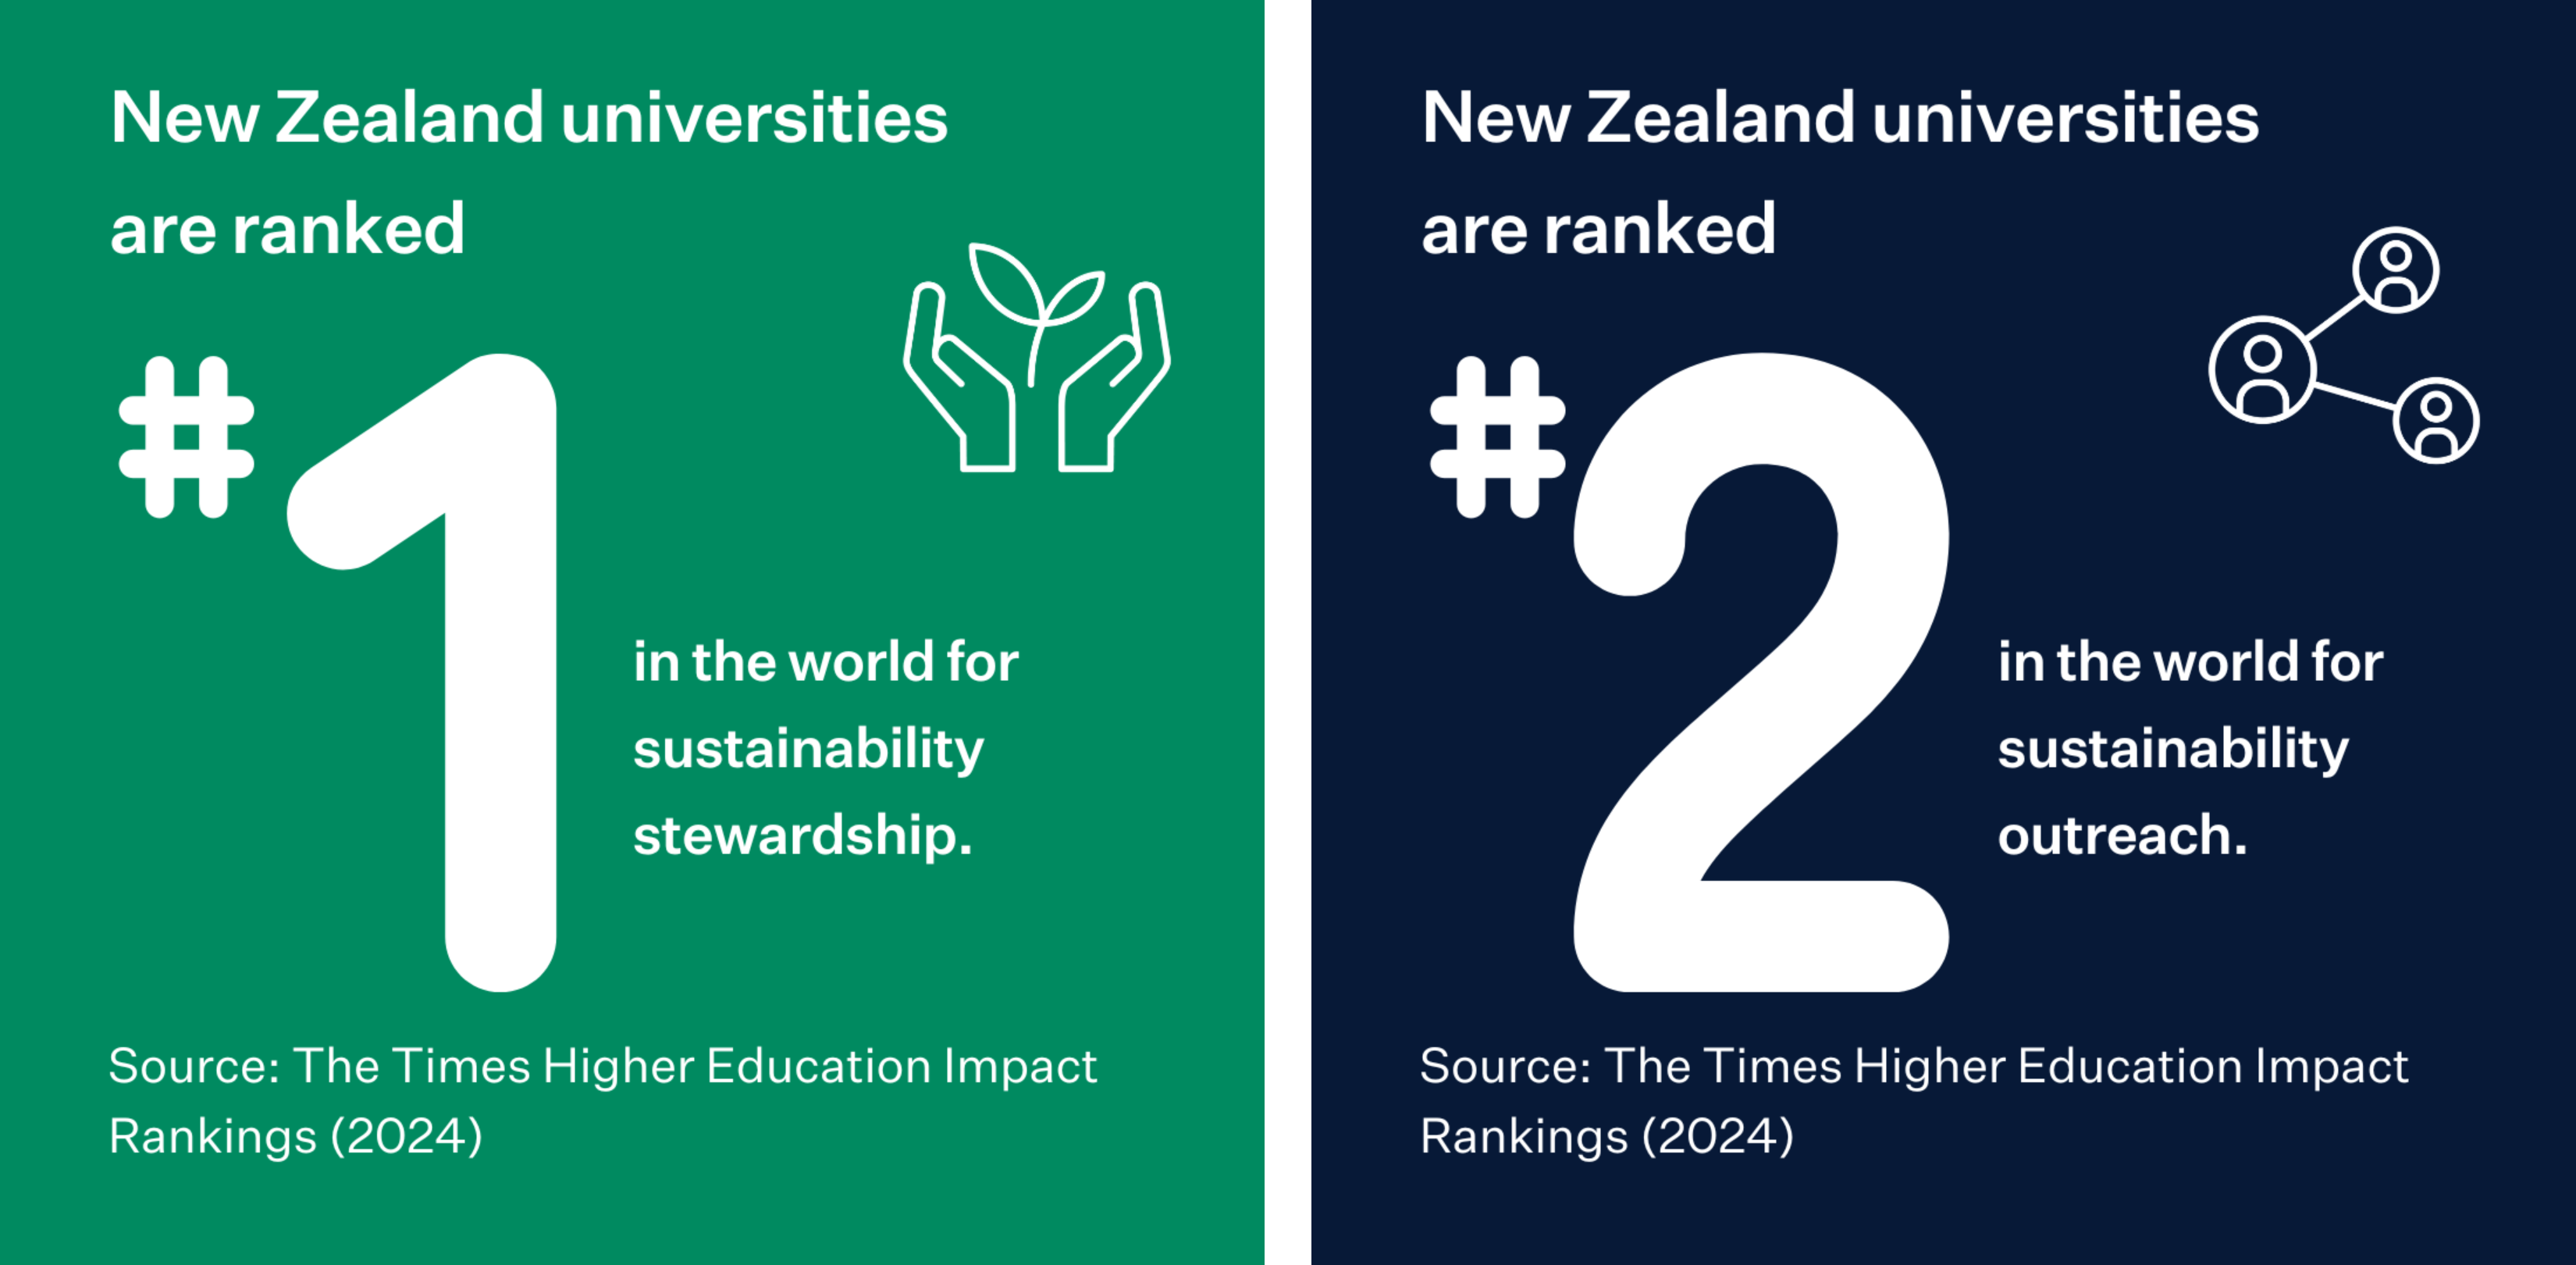 Các trường đại học New Zealand đã đạt điểm cao ở nhiều chỉ số quan trọng như đứng đầu ở hạng mục “trách nhiệm quản lý